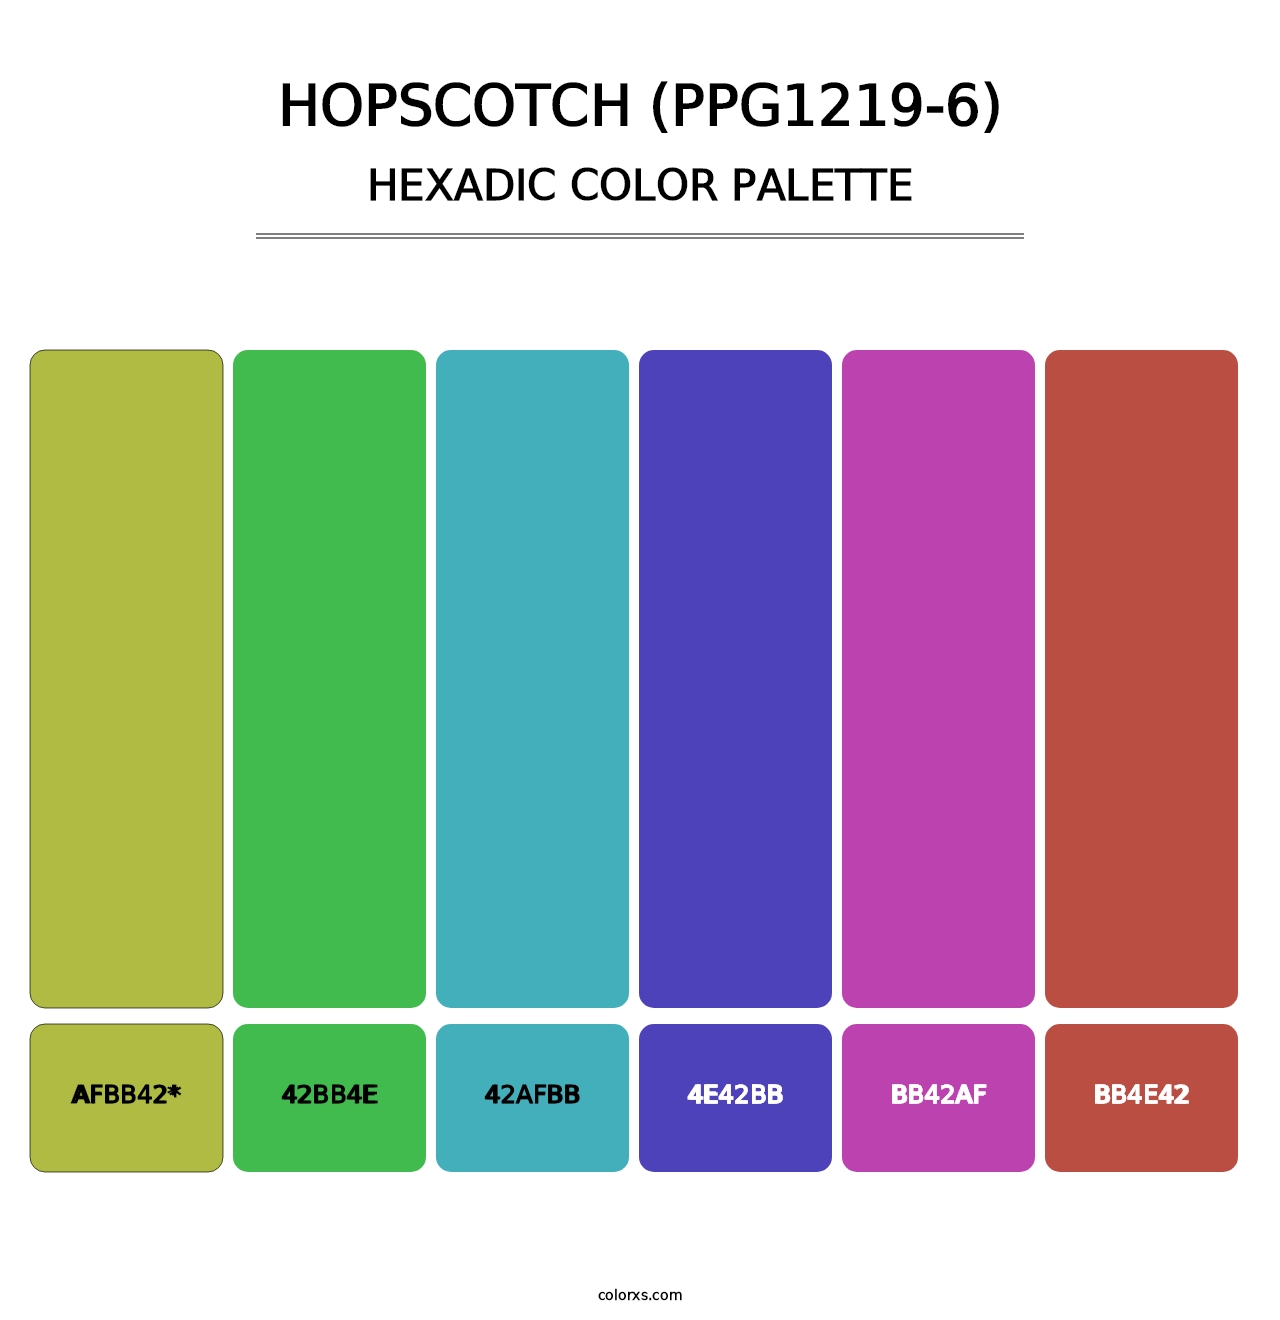 Hopscotch (PPG1219-6) - Hexadic Color Palette